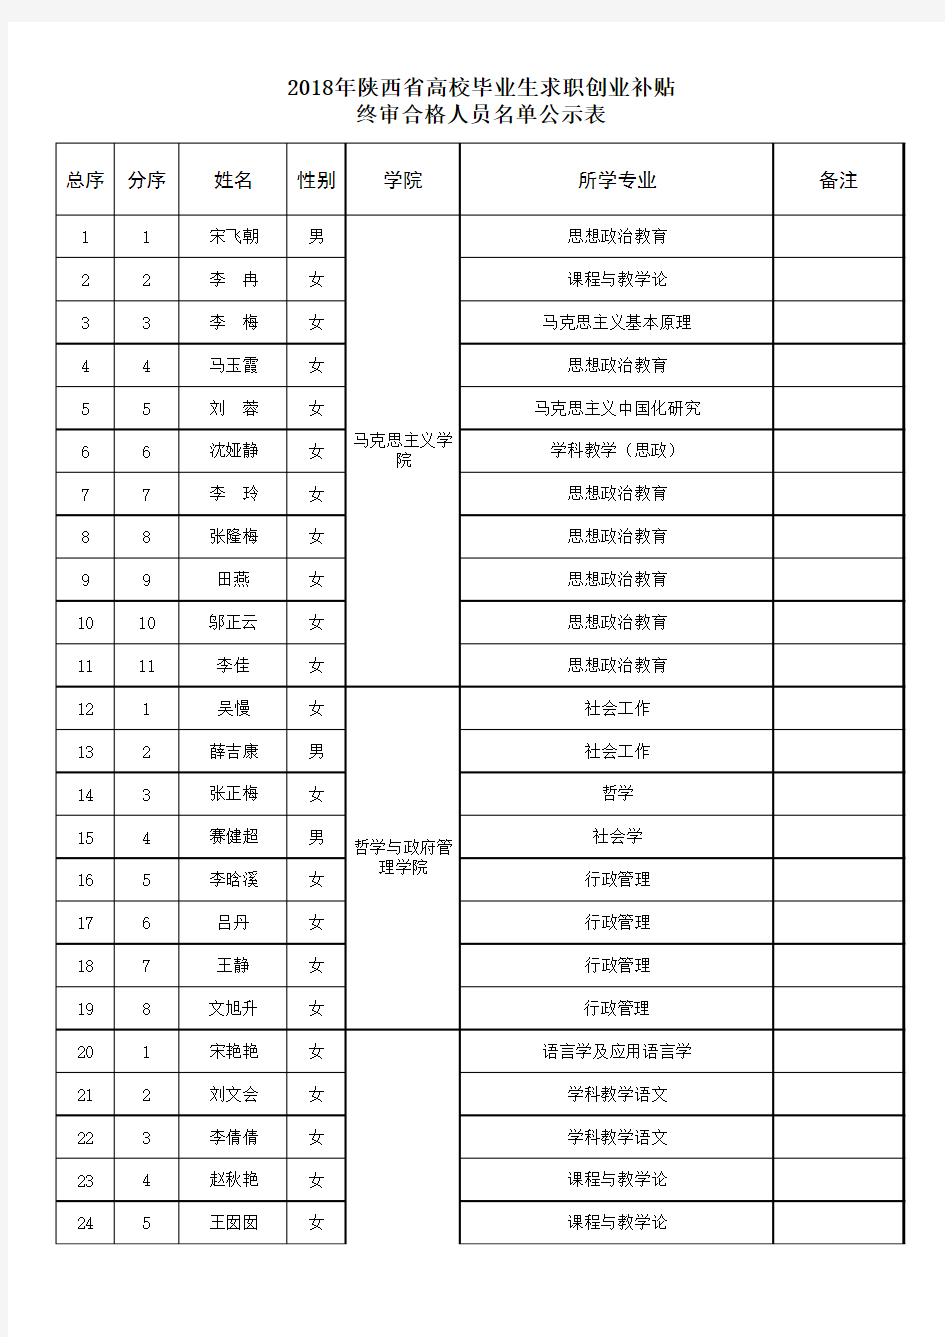 2018年陕西省高校毕业生求职创业补贴终审合格人员名单公